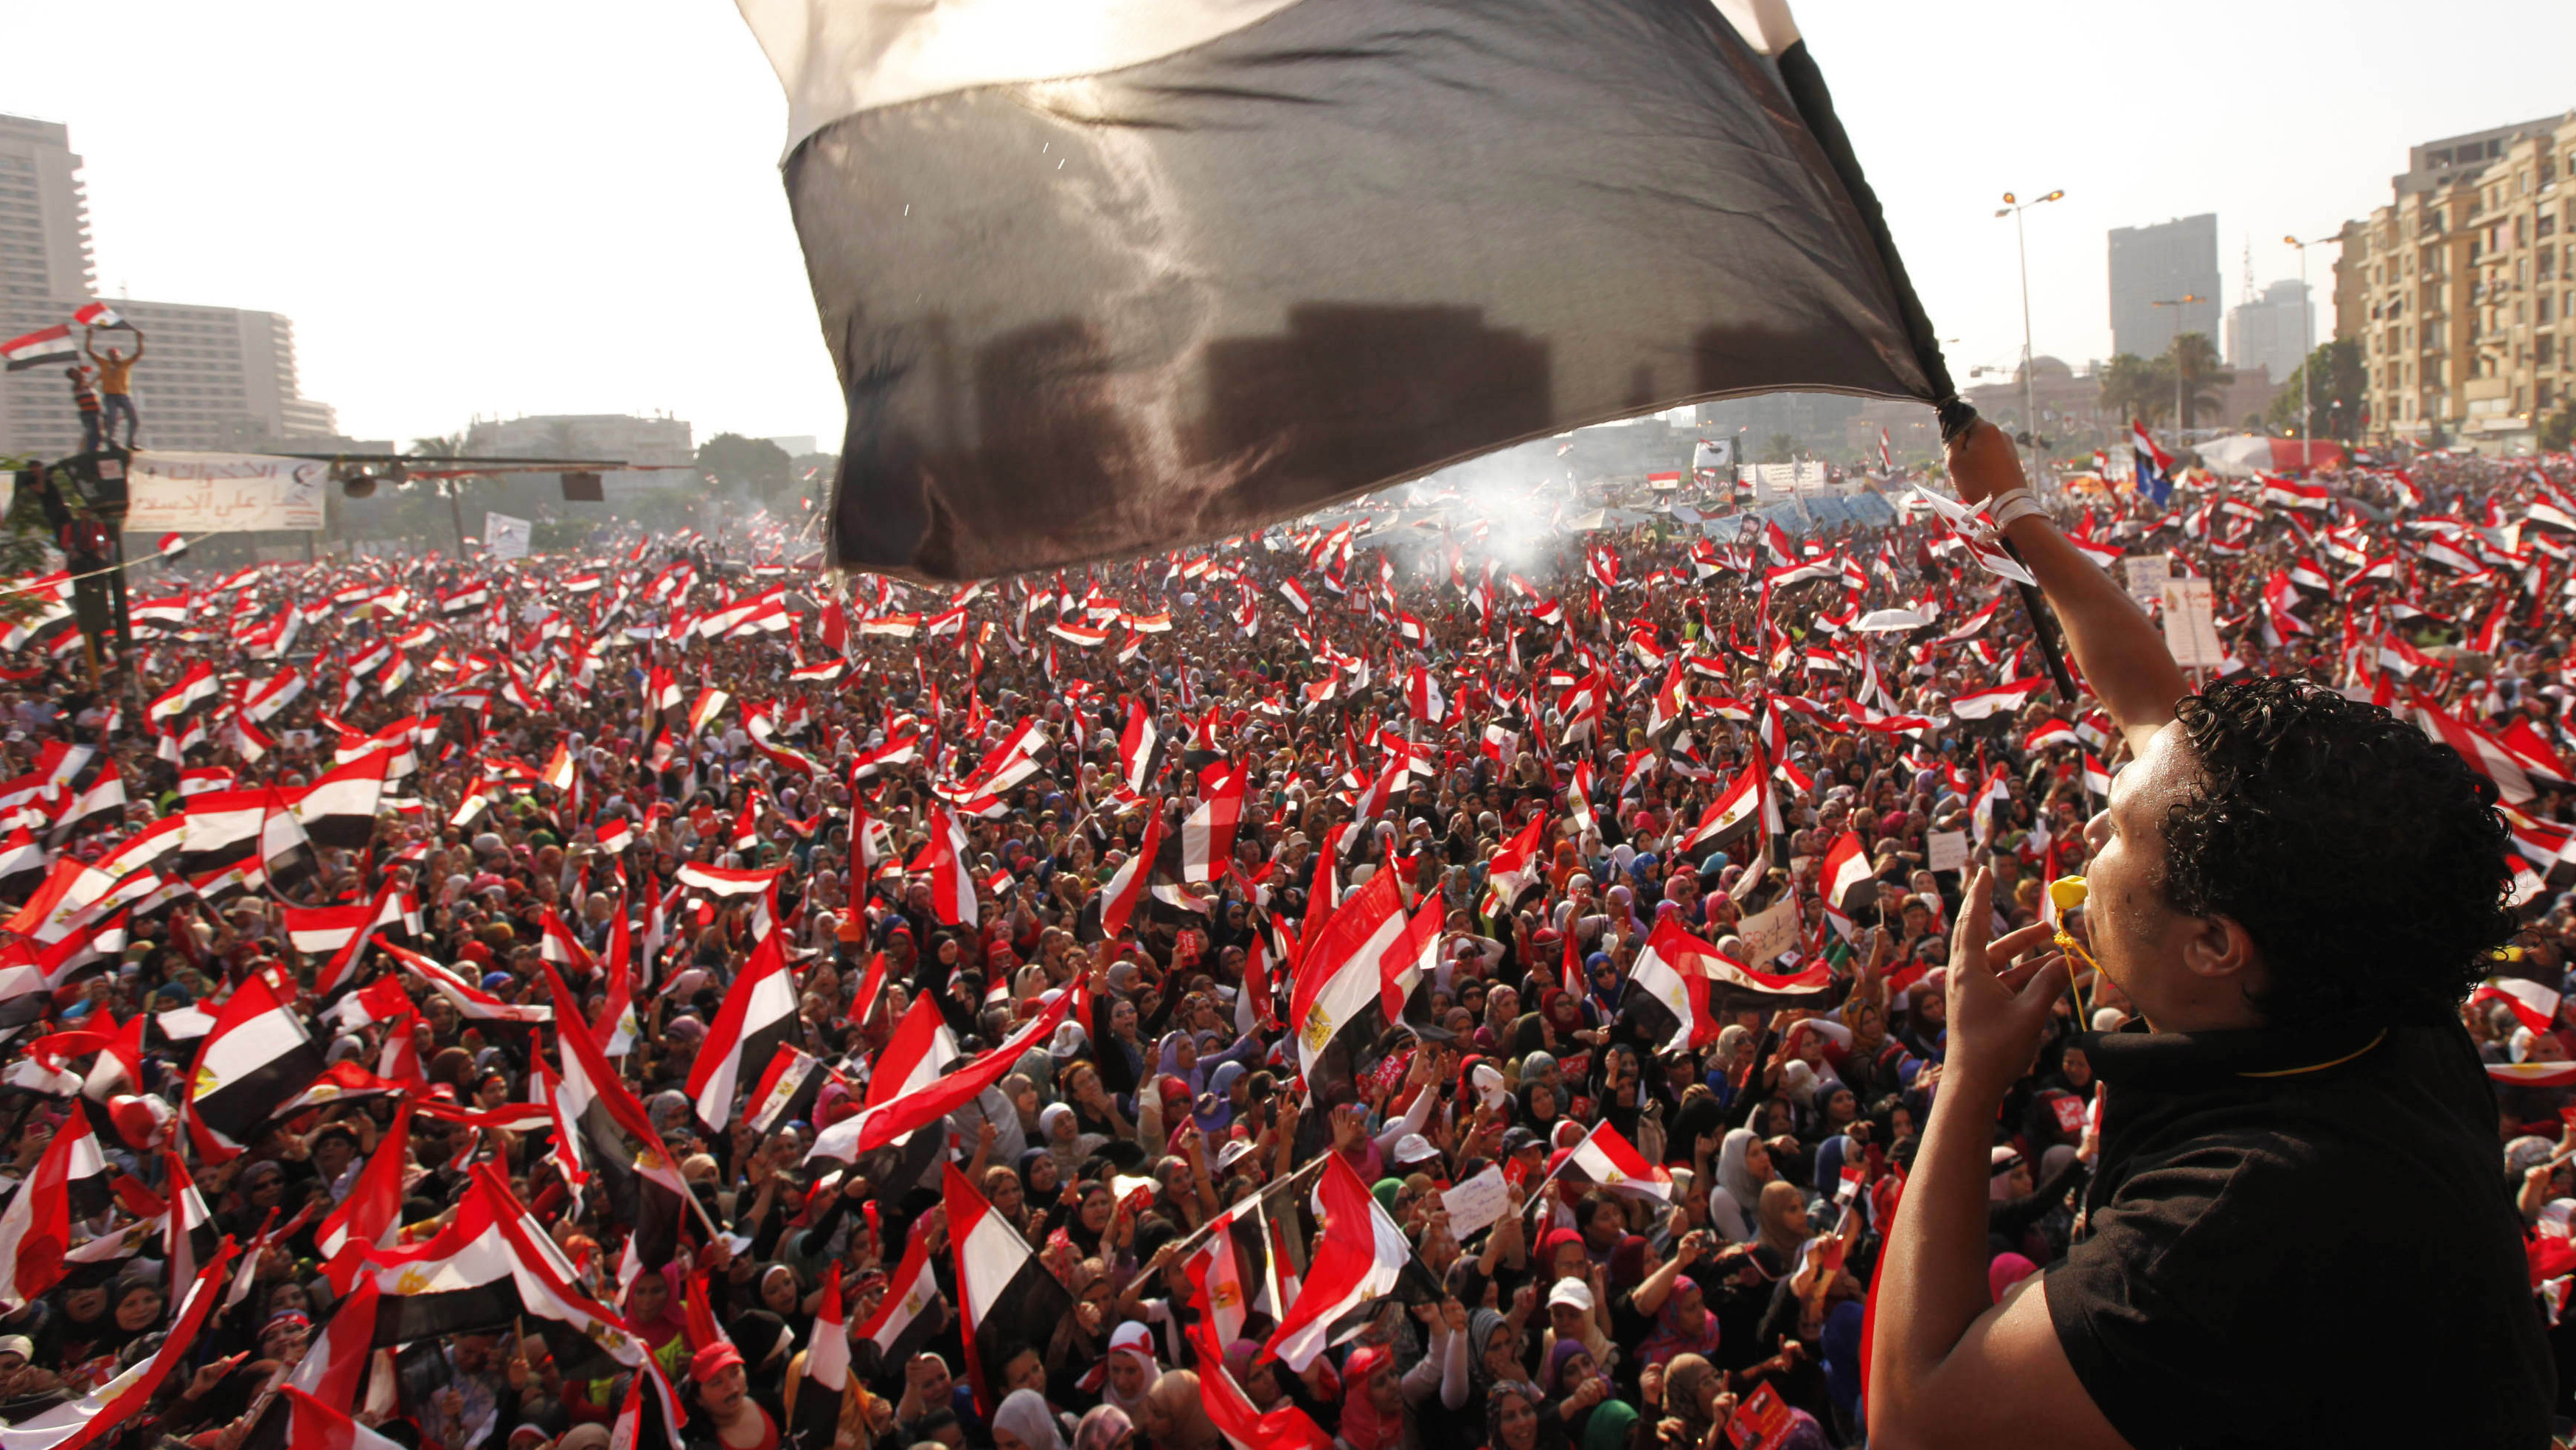 Μαζικές ειρηνικές διαδηλώσεις υποστηρικτών του Μόρσι